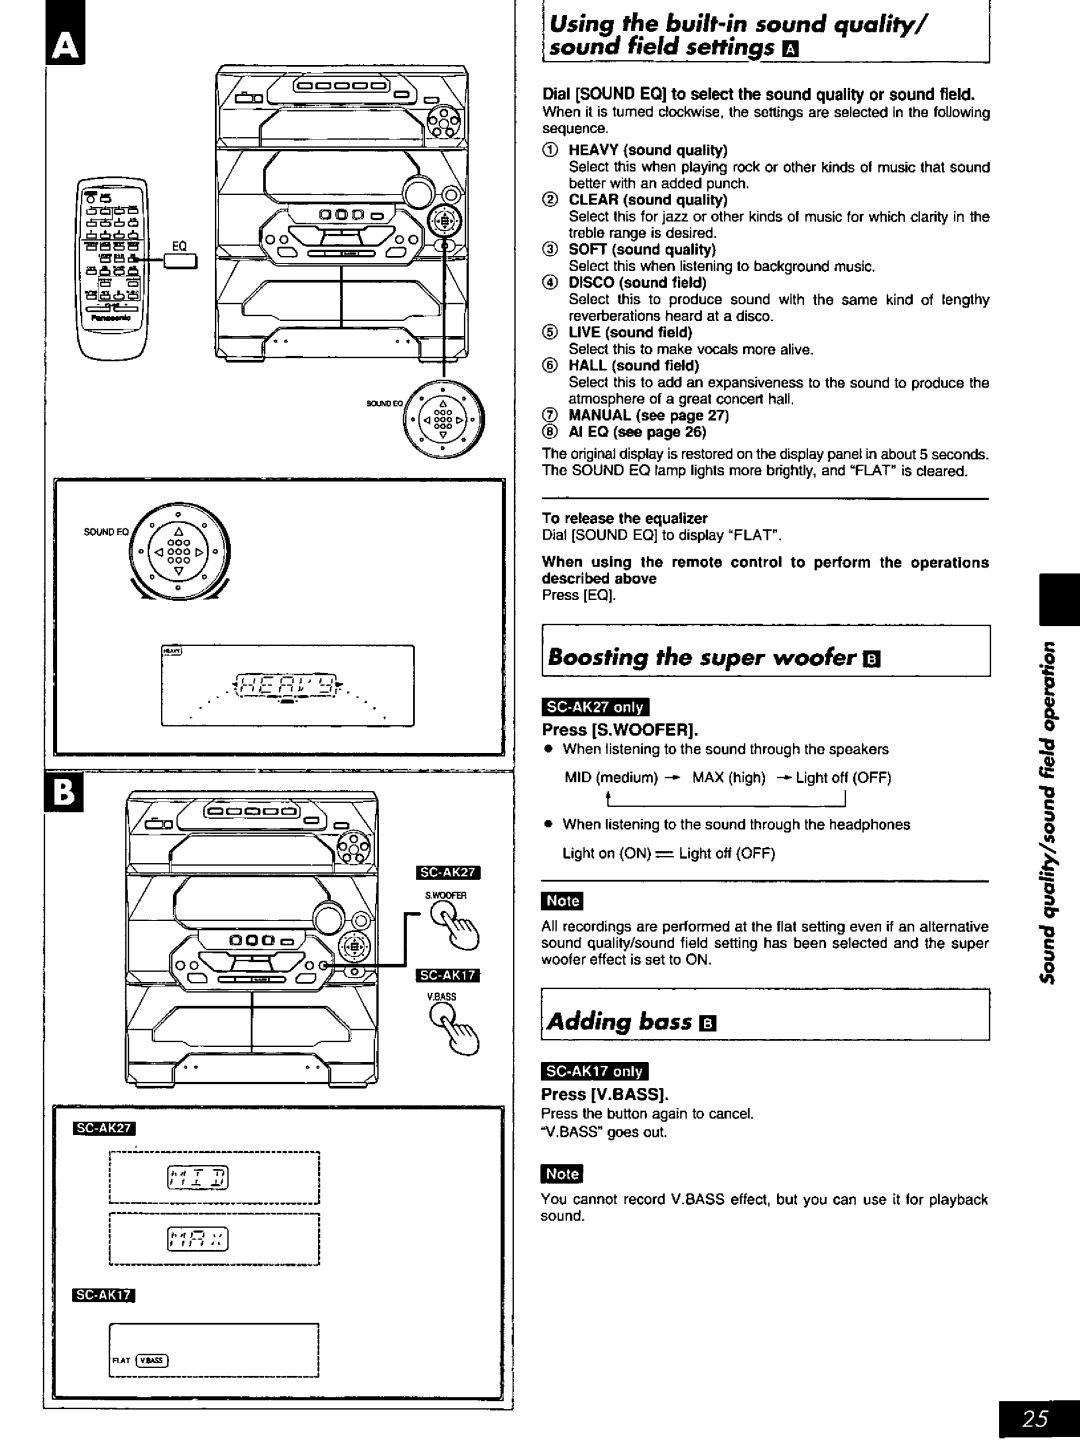 Panasonic SC-AK17, SC-AK27 manual 